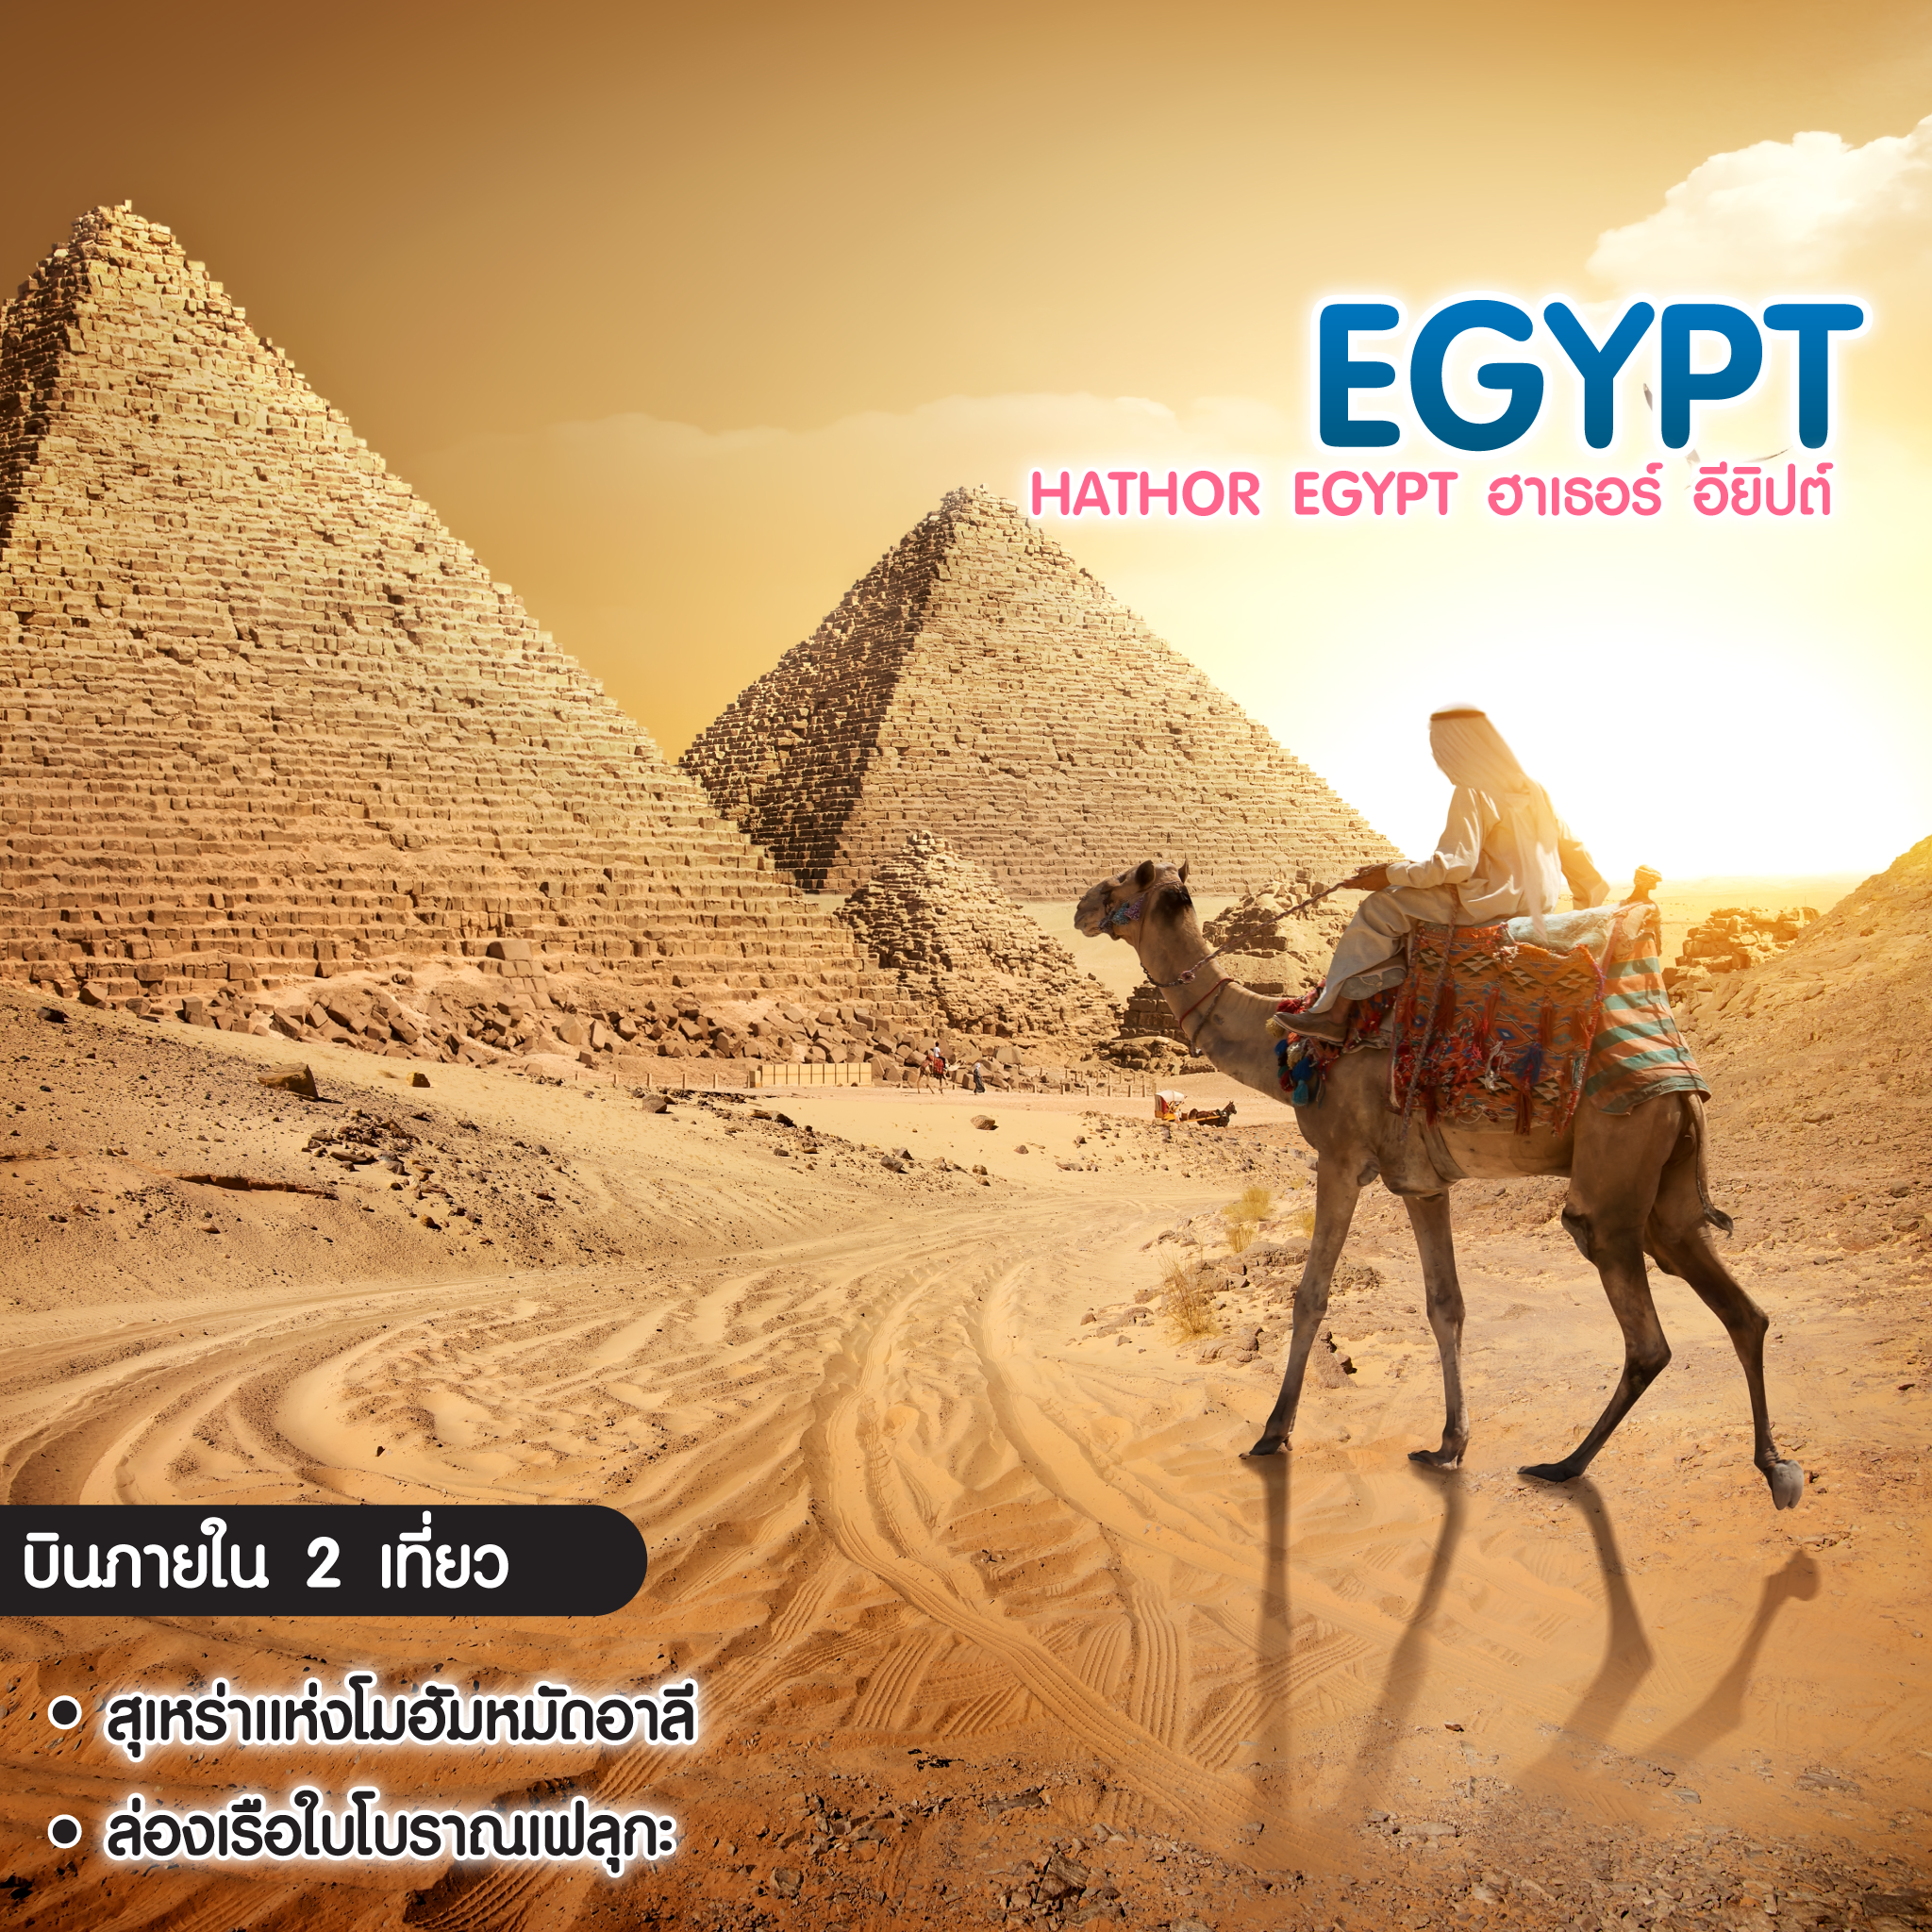 ทัวร์อียิปต์ Hathor Egypt ฮาเธอร์ อียิปต์